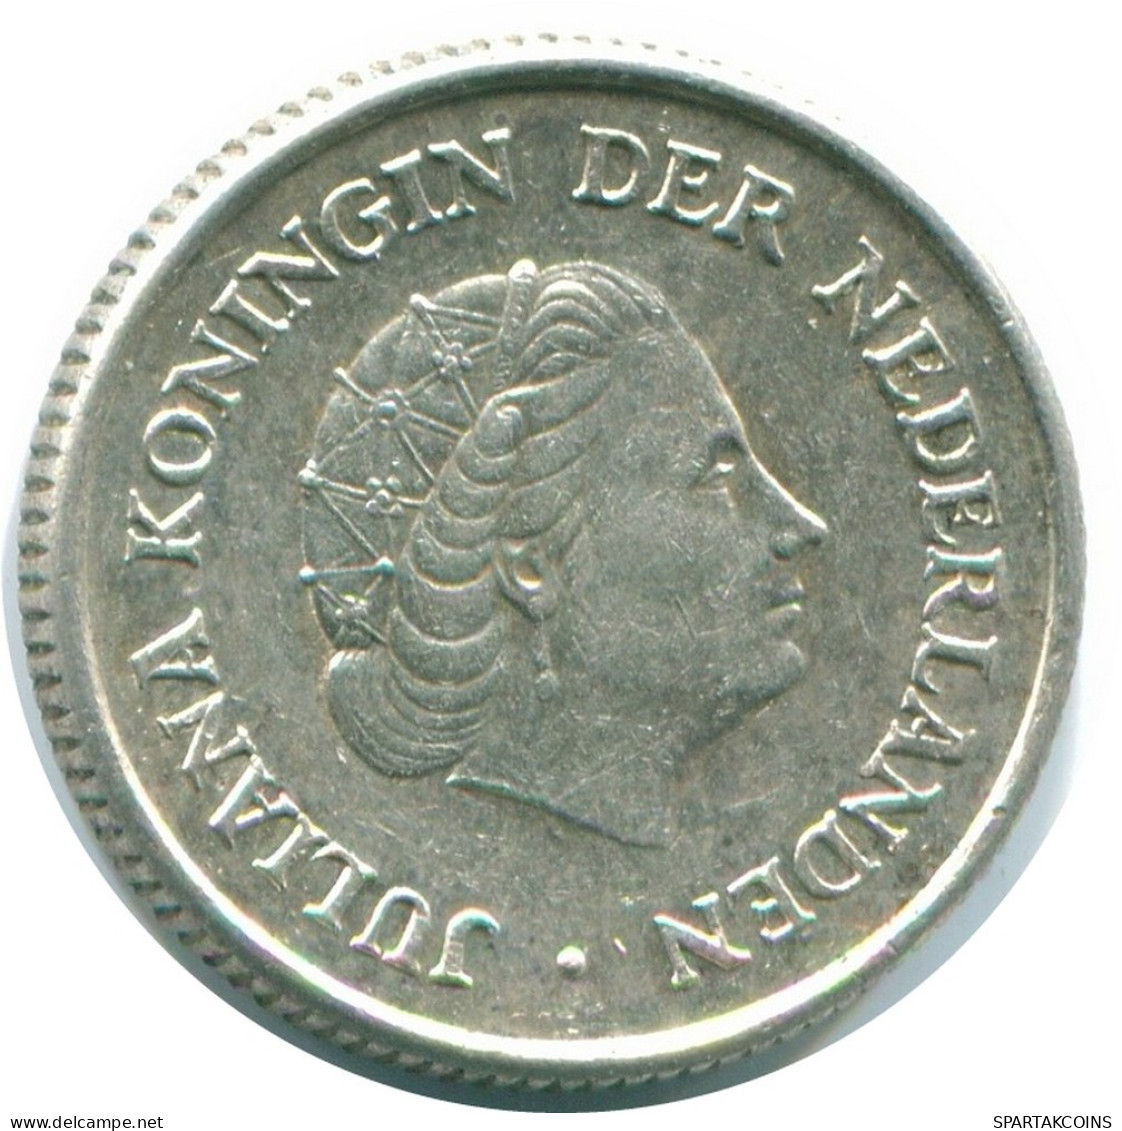 1/4 GULDEN 1956 NIEDERLÄNDISCHE ANTILLEN SILBER Koloniale Münze #NL10910.4.D.A - Antilles Néerlandaises